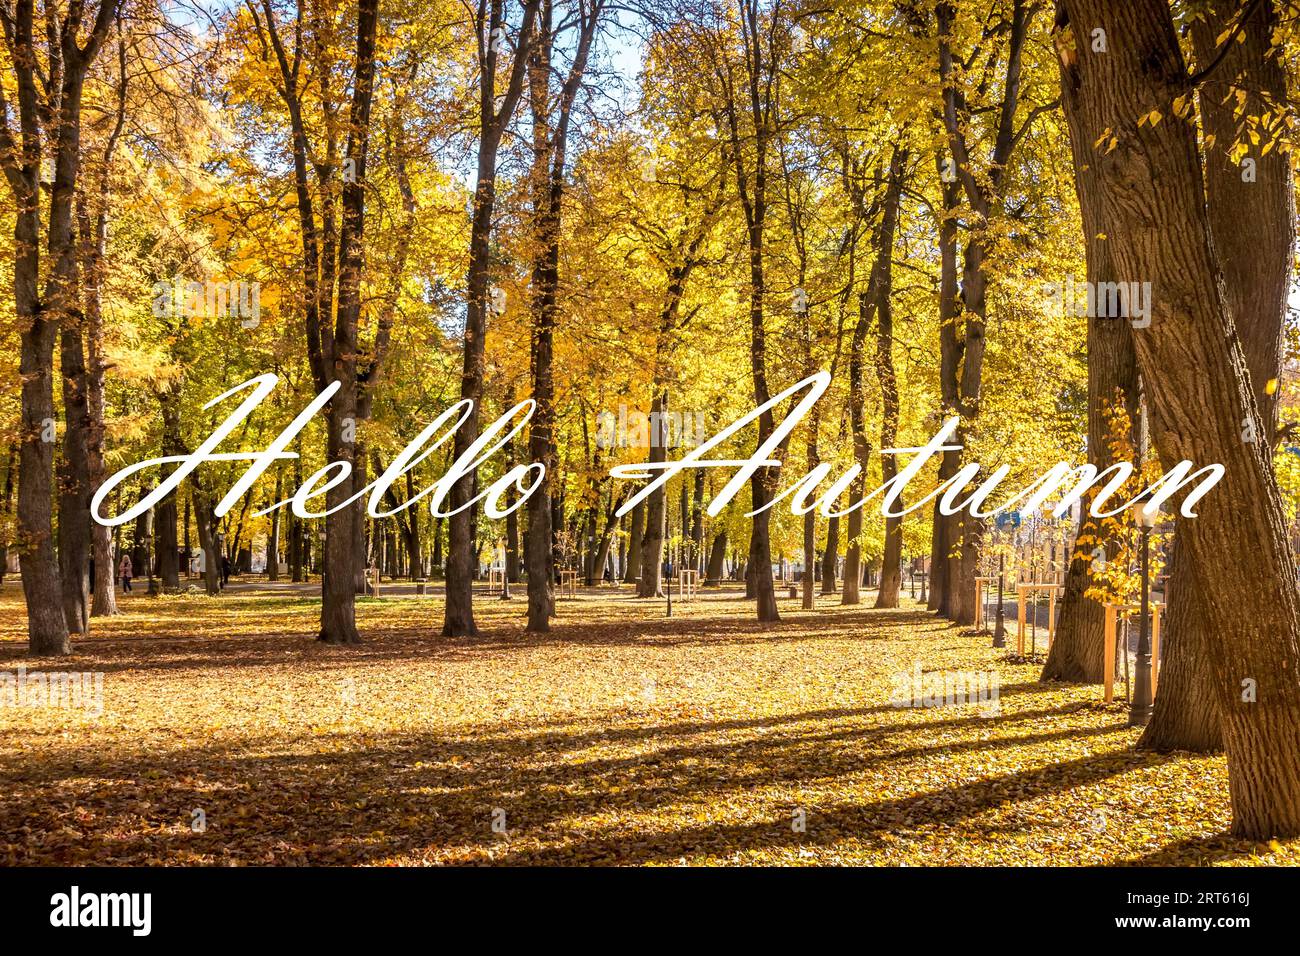 Die Worte Hallo Herbst auf dem Hintergrund des Herbstparks, der in der goldenen Herbstsaison von der Sonne beleuchtet wird. Grußkarte. Das Konzept des Beginns der Herbstmeere Stockfoto